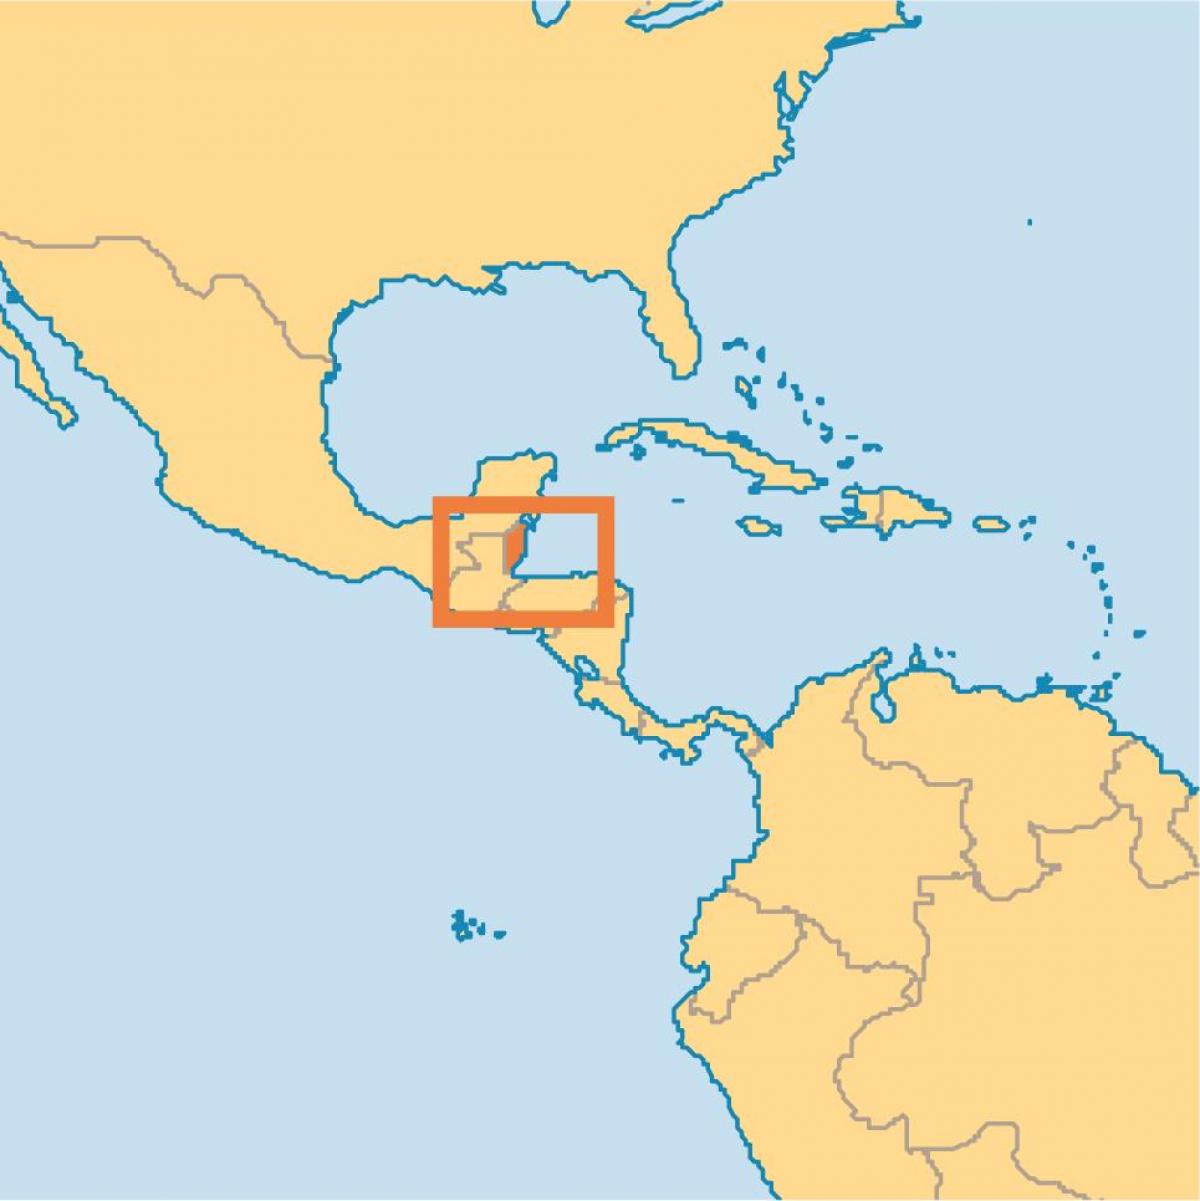 Belize plats på världskartan